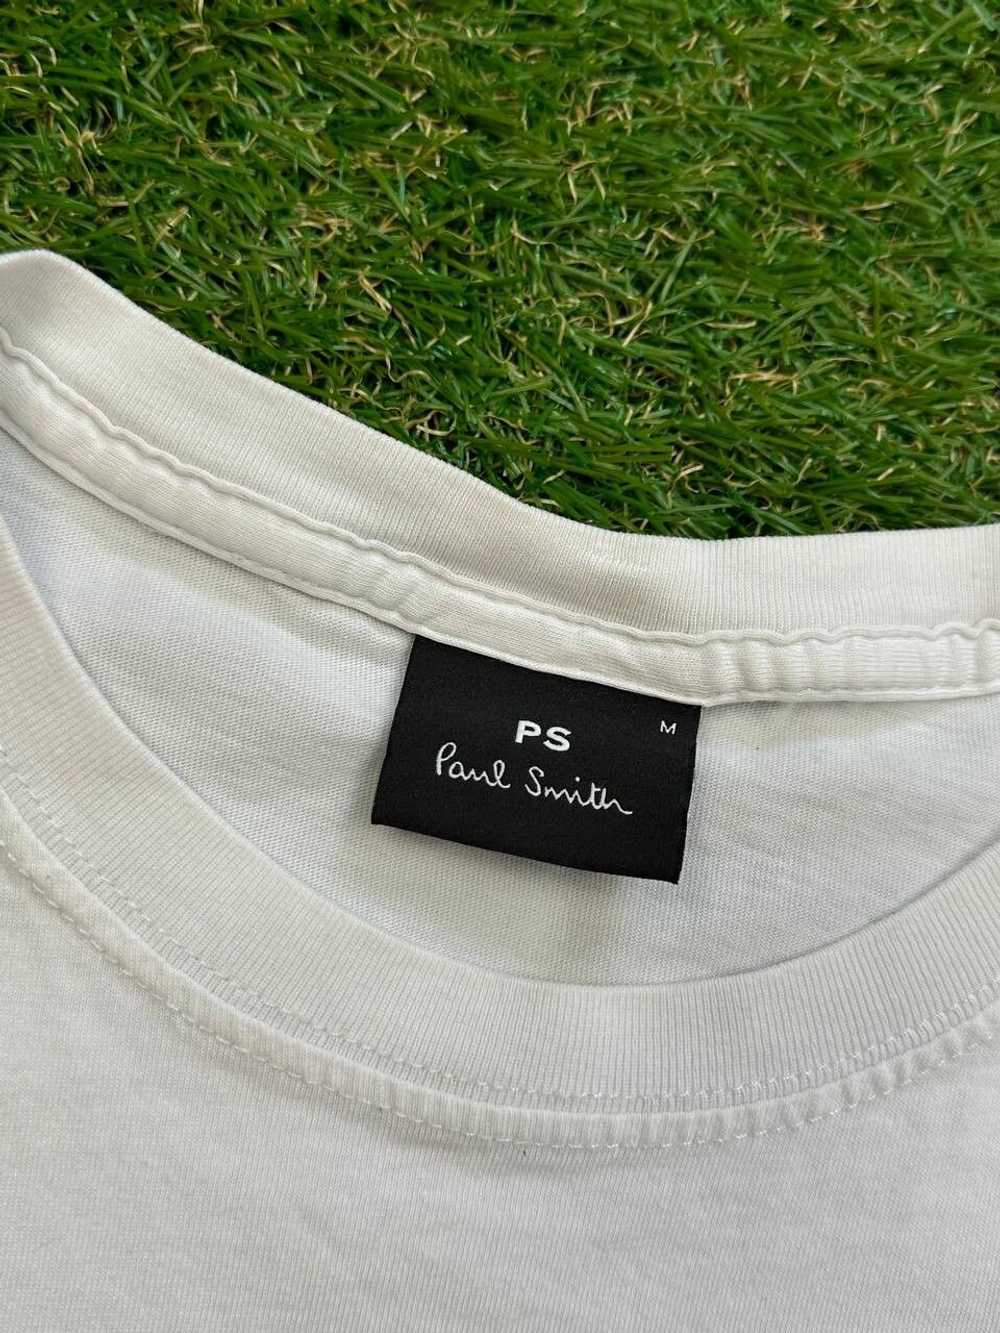 Designer × Paul Smith × Streetwear PS by Paul Smi… - image 8